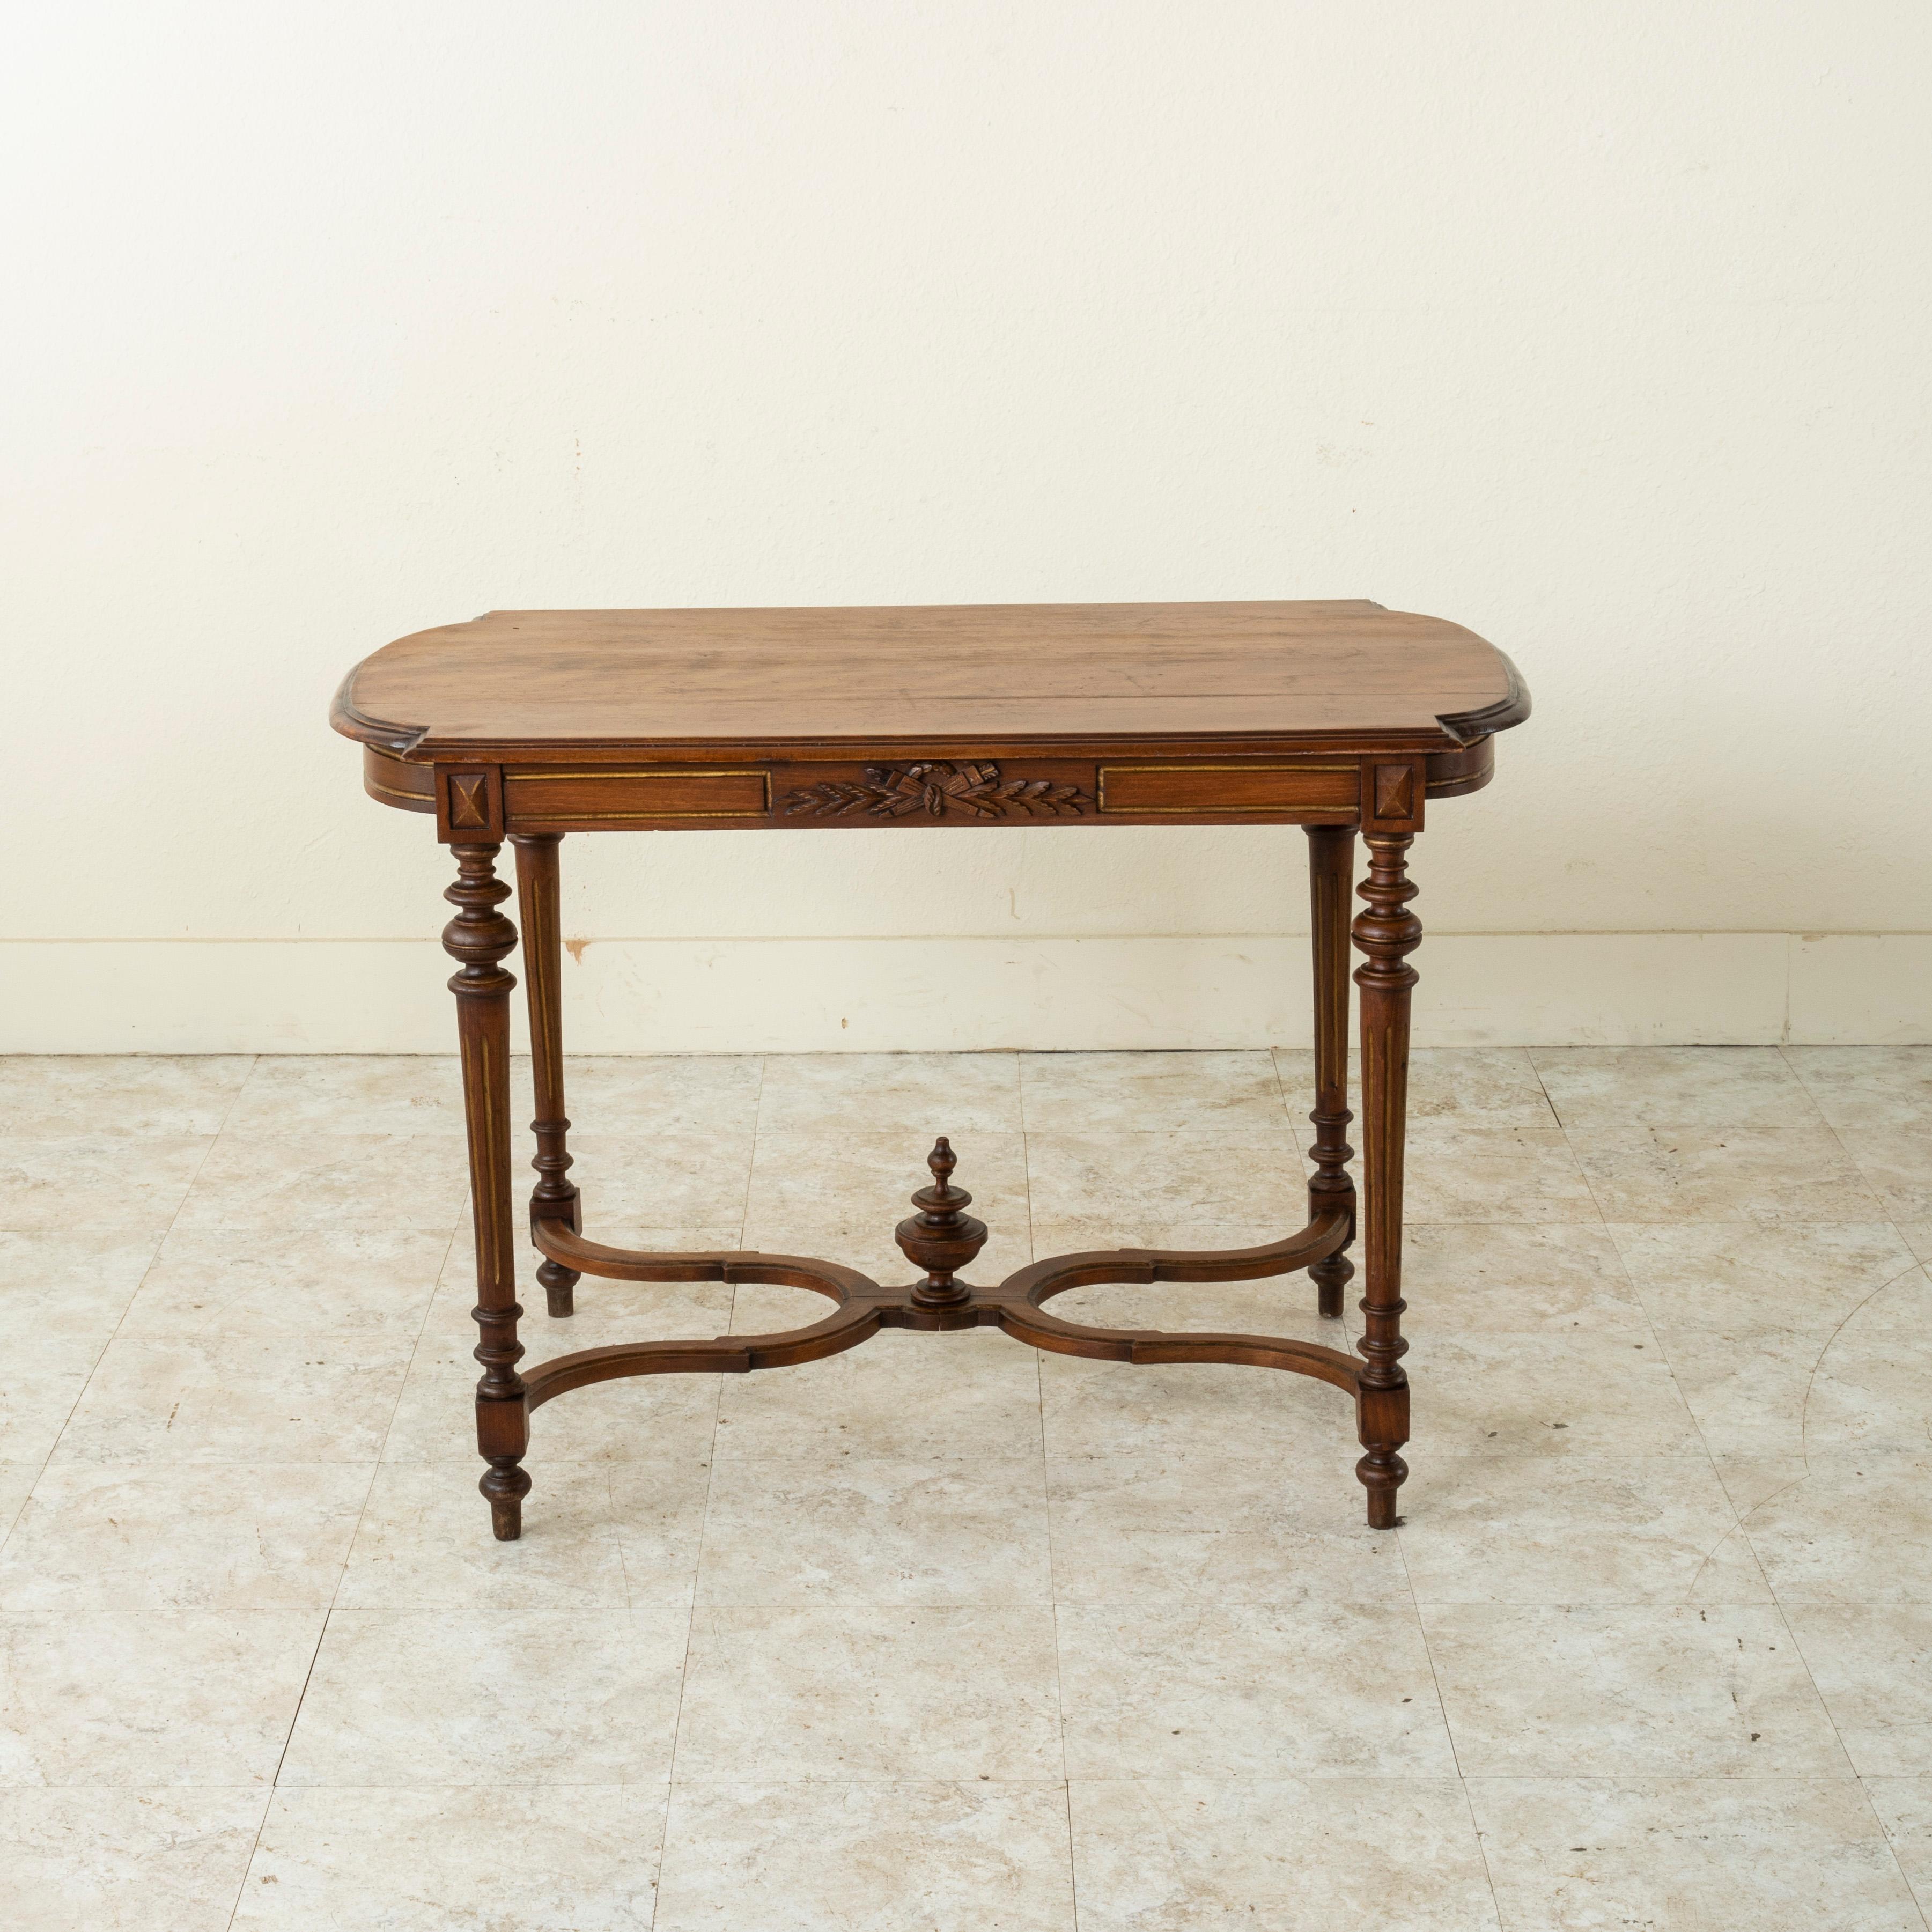 Cette table à écrire en noyer de style Louis XVI, datant de la fin du XIXe siècle, présente un élément sculpté à la main représentant un flambeau croisé classique et un carquois avec une couronne de lauriers. Son plateau biseauté repose au-dessus